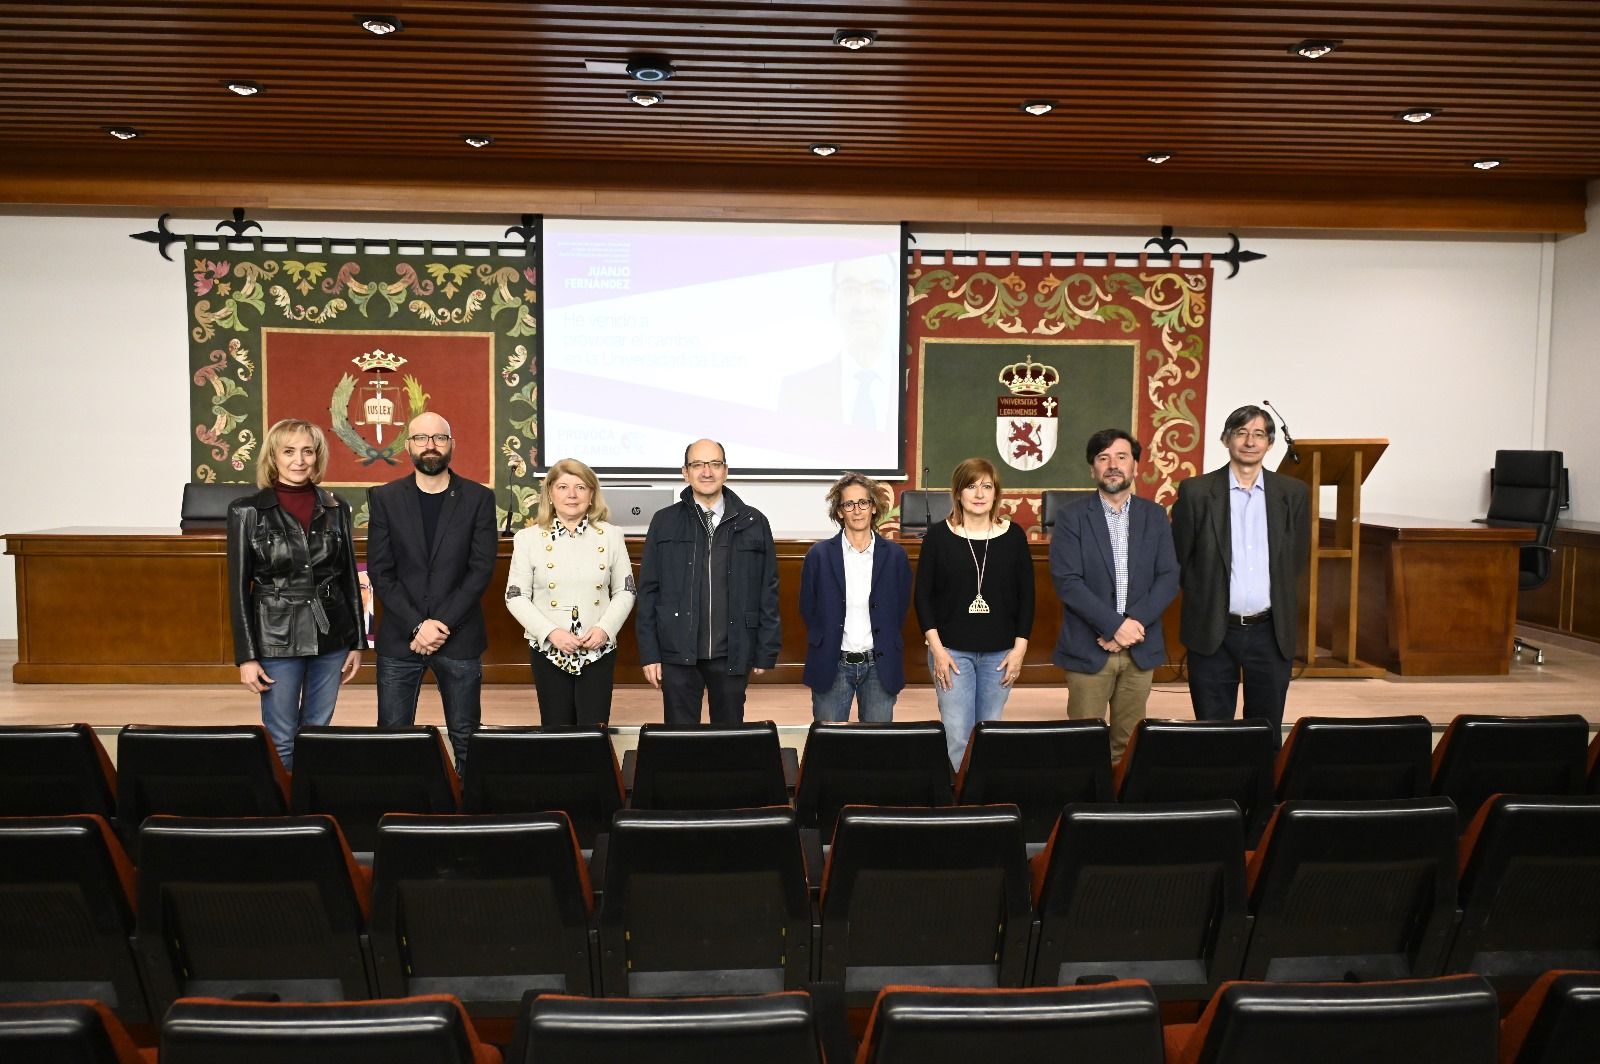 Acto de campaña electoral del candidato a rector Juan José Fernández, este jueves en la Facultad de Derecho de la Universidad de León. | SAÚL ARÉN